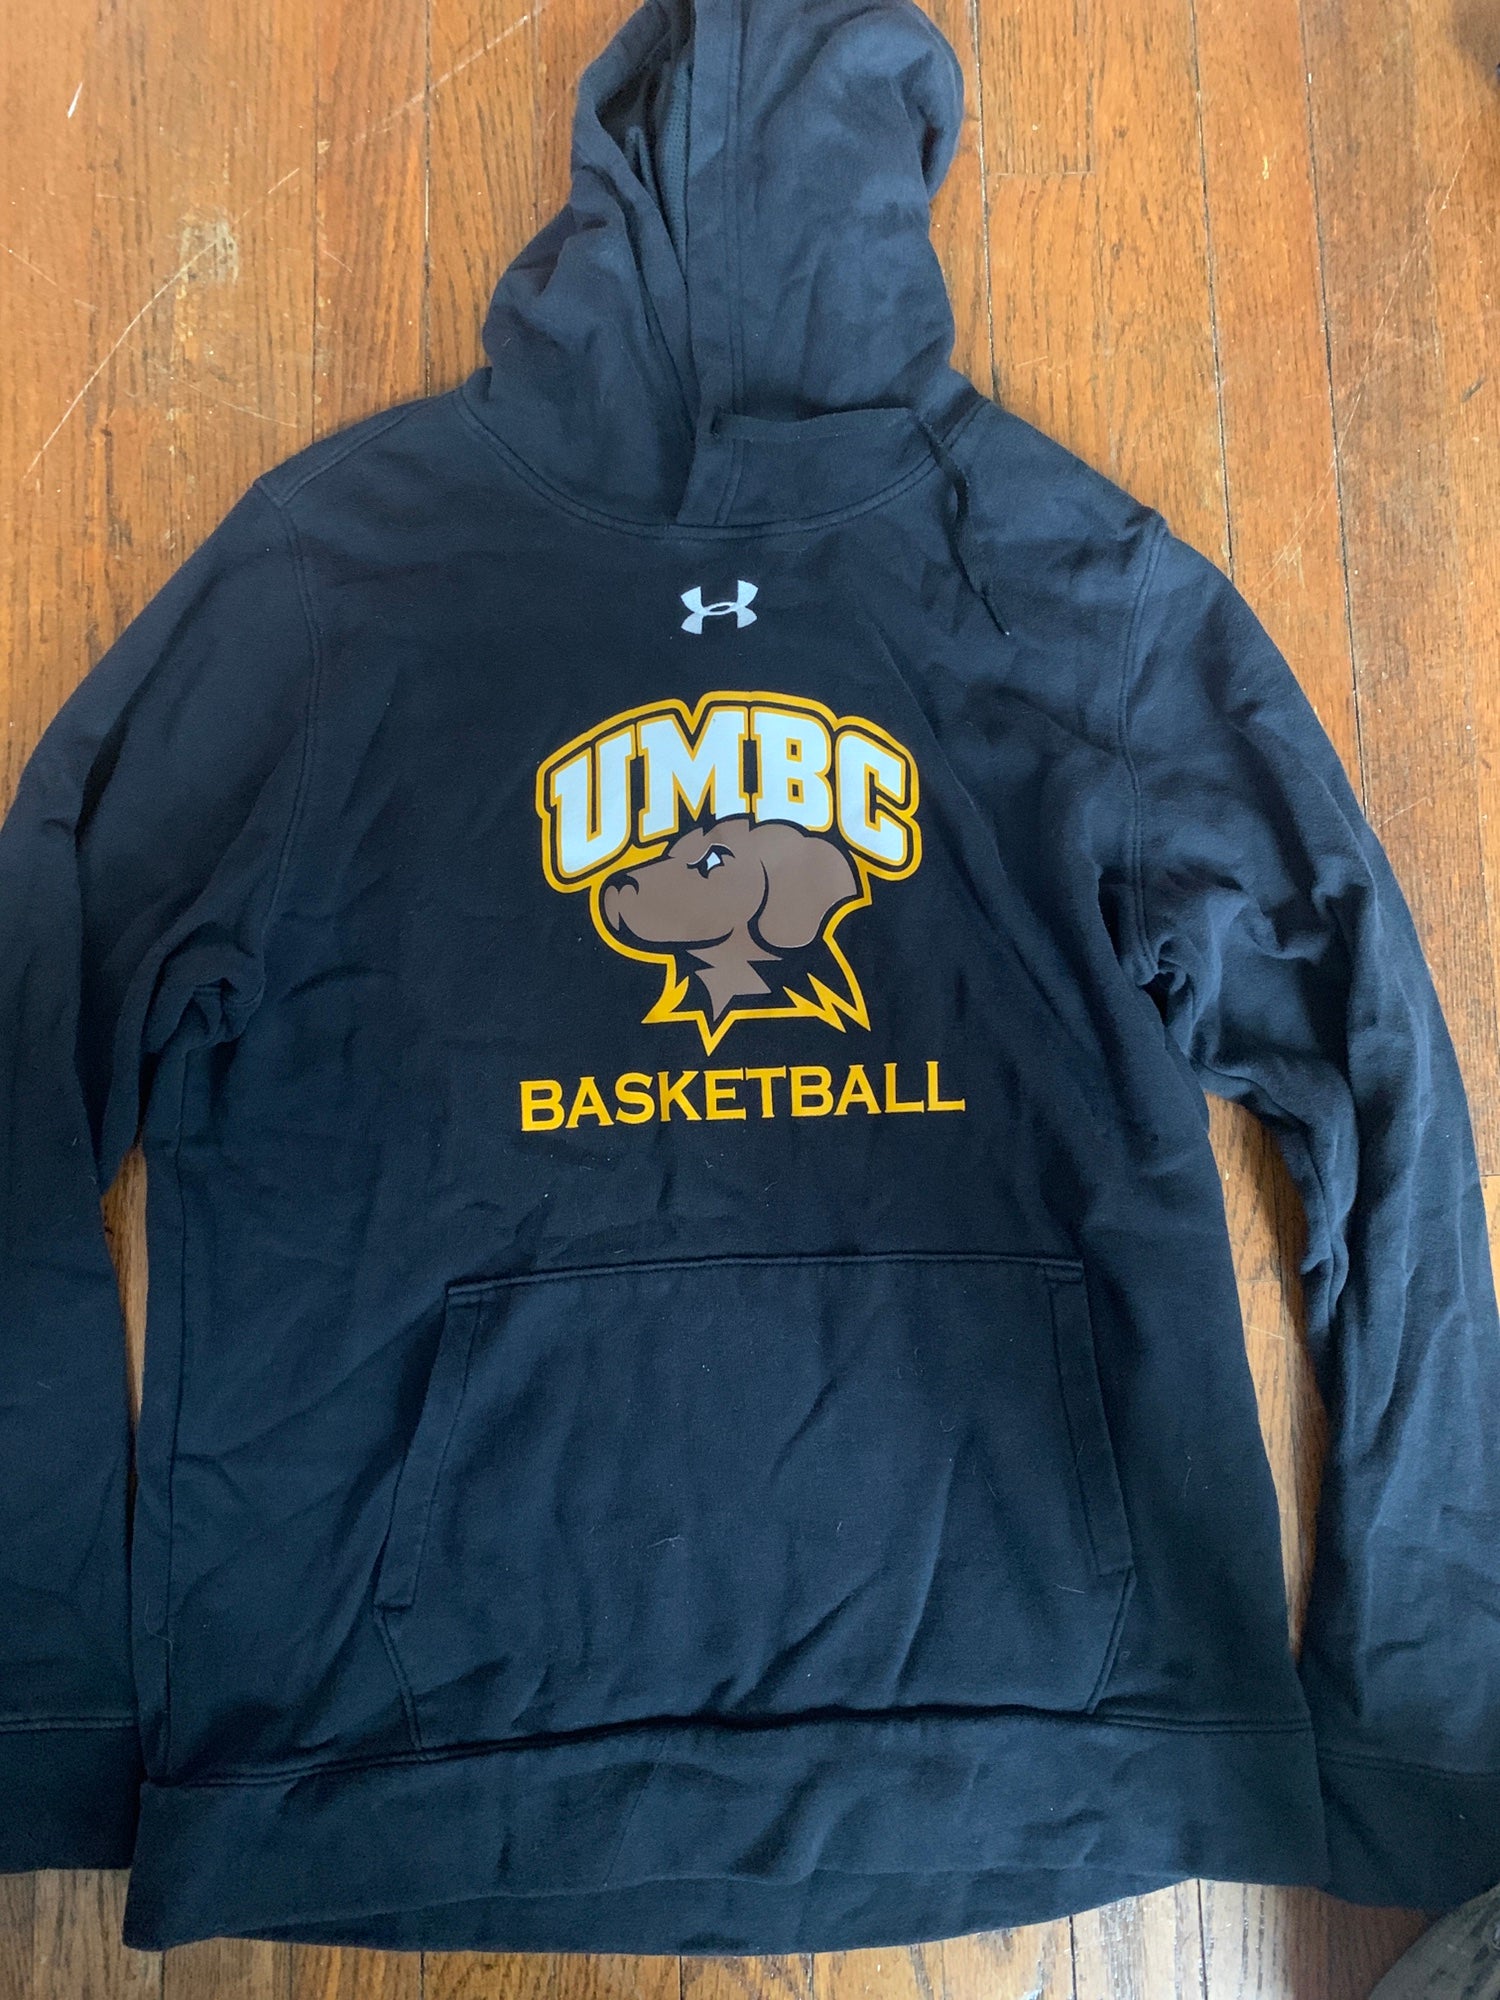 Umbc Basketball Team Issued Sweatshirt | SidelineSwap